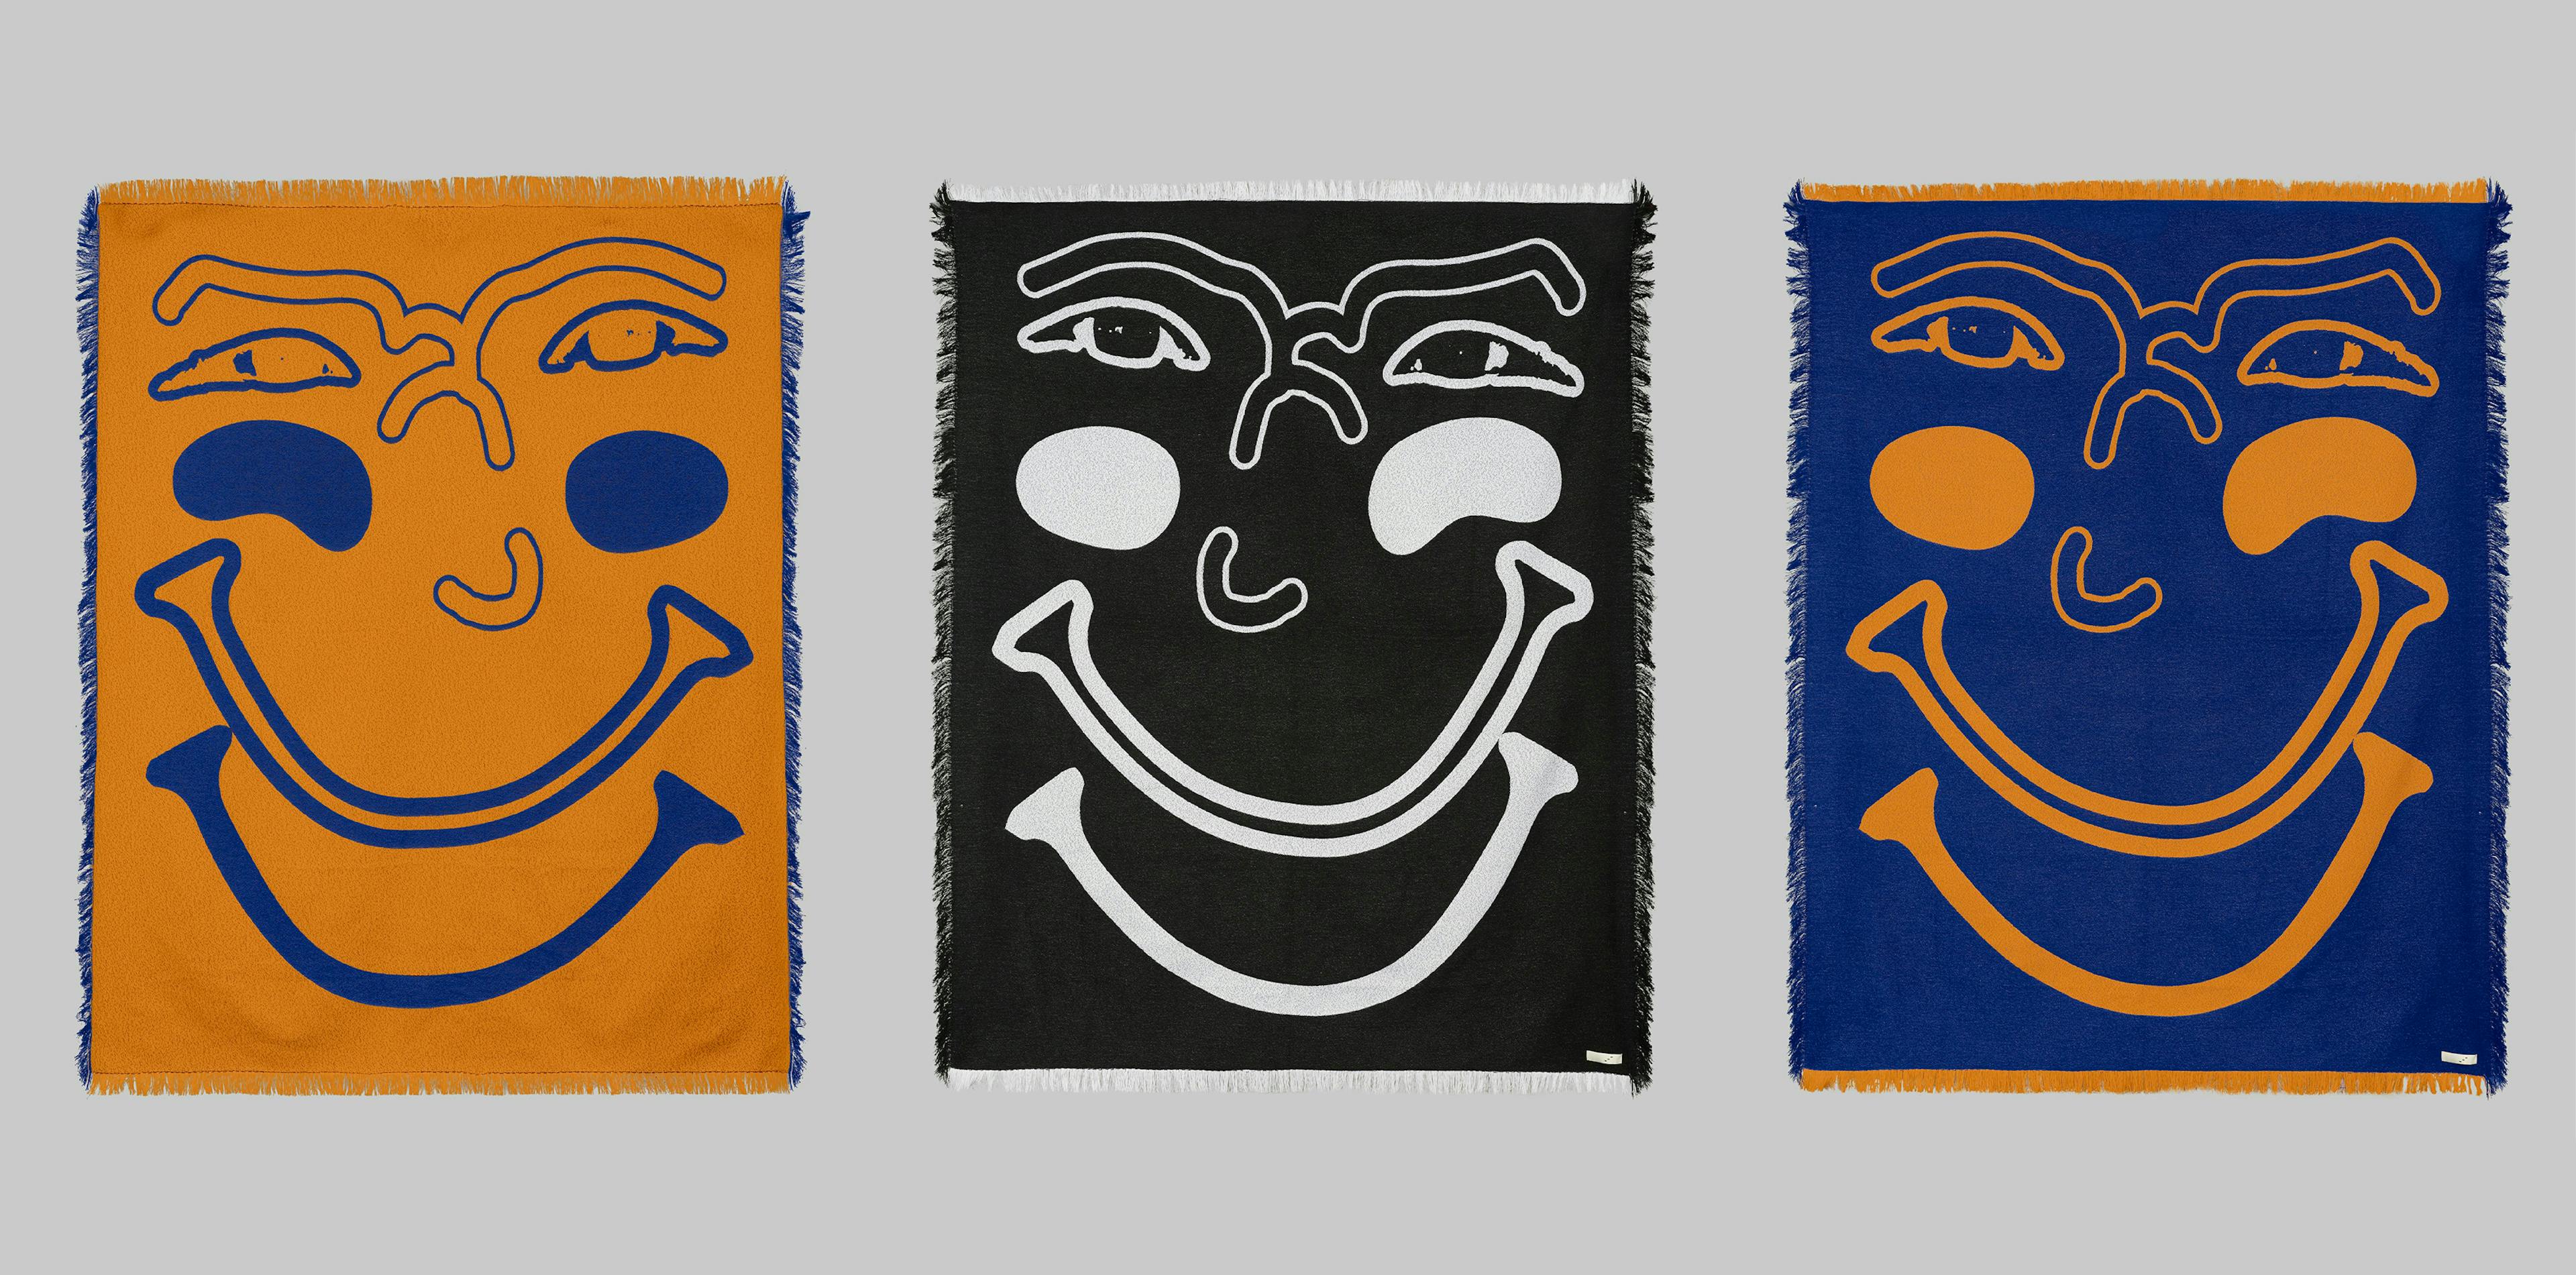 'The Face' la coperta di ANTI-DO-TO per la Fondazione Isacchi Samaja Onlus